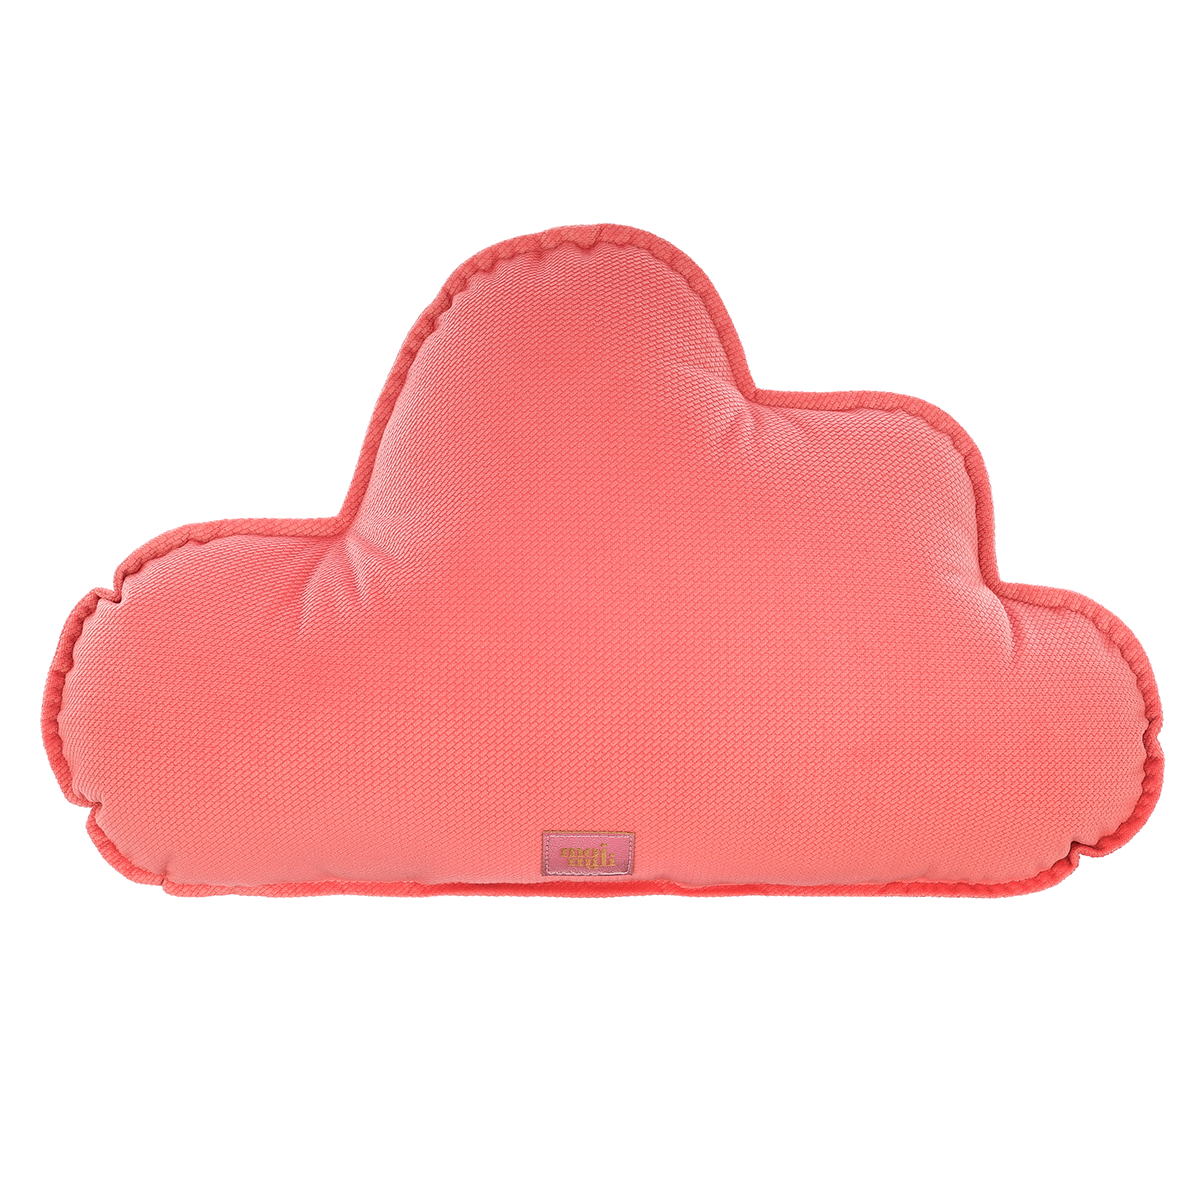 Velvet "Candy pink" Cloud Pillow